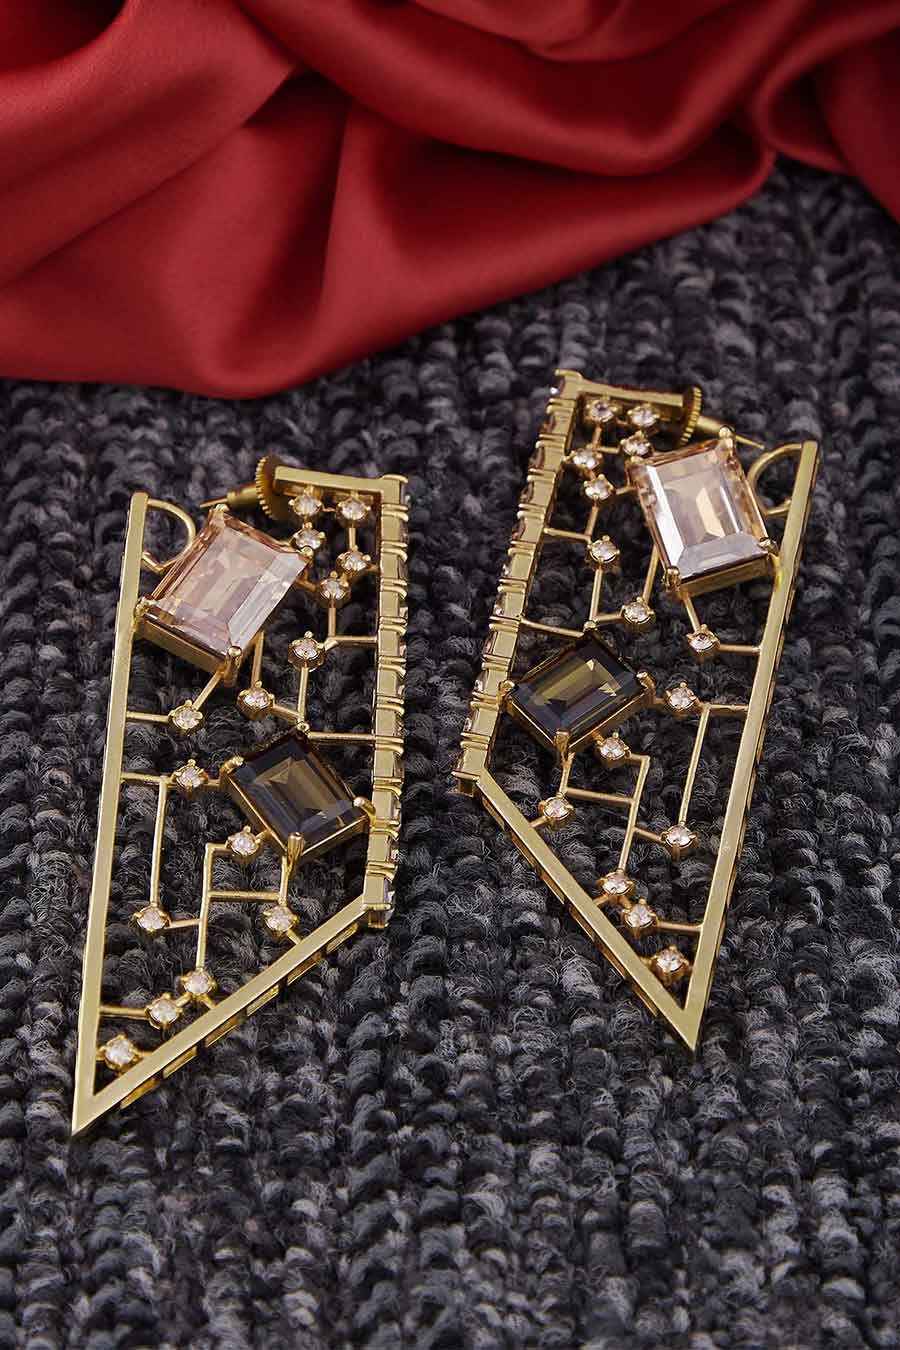 Gold Swarovski Dangler Earrings